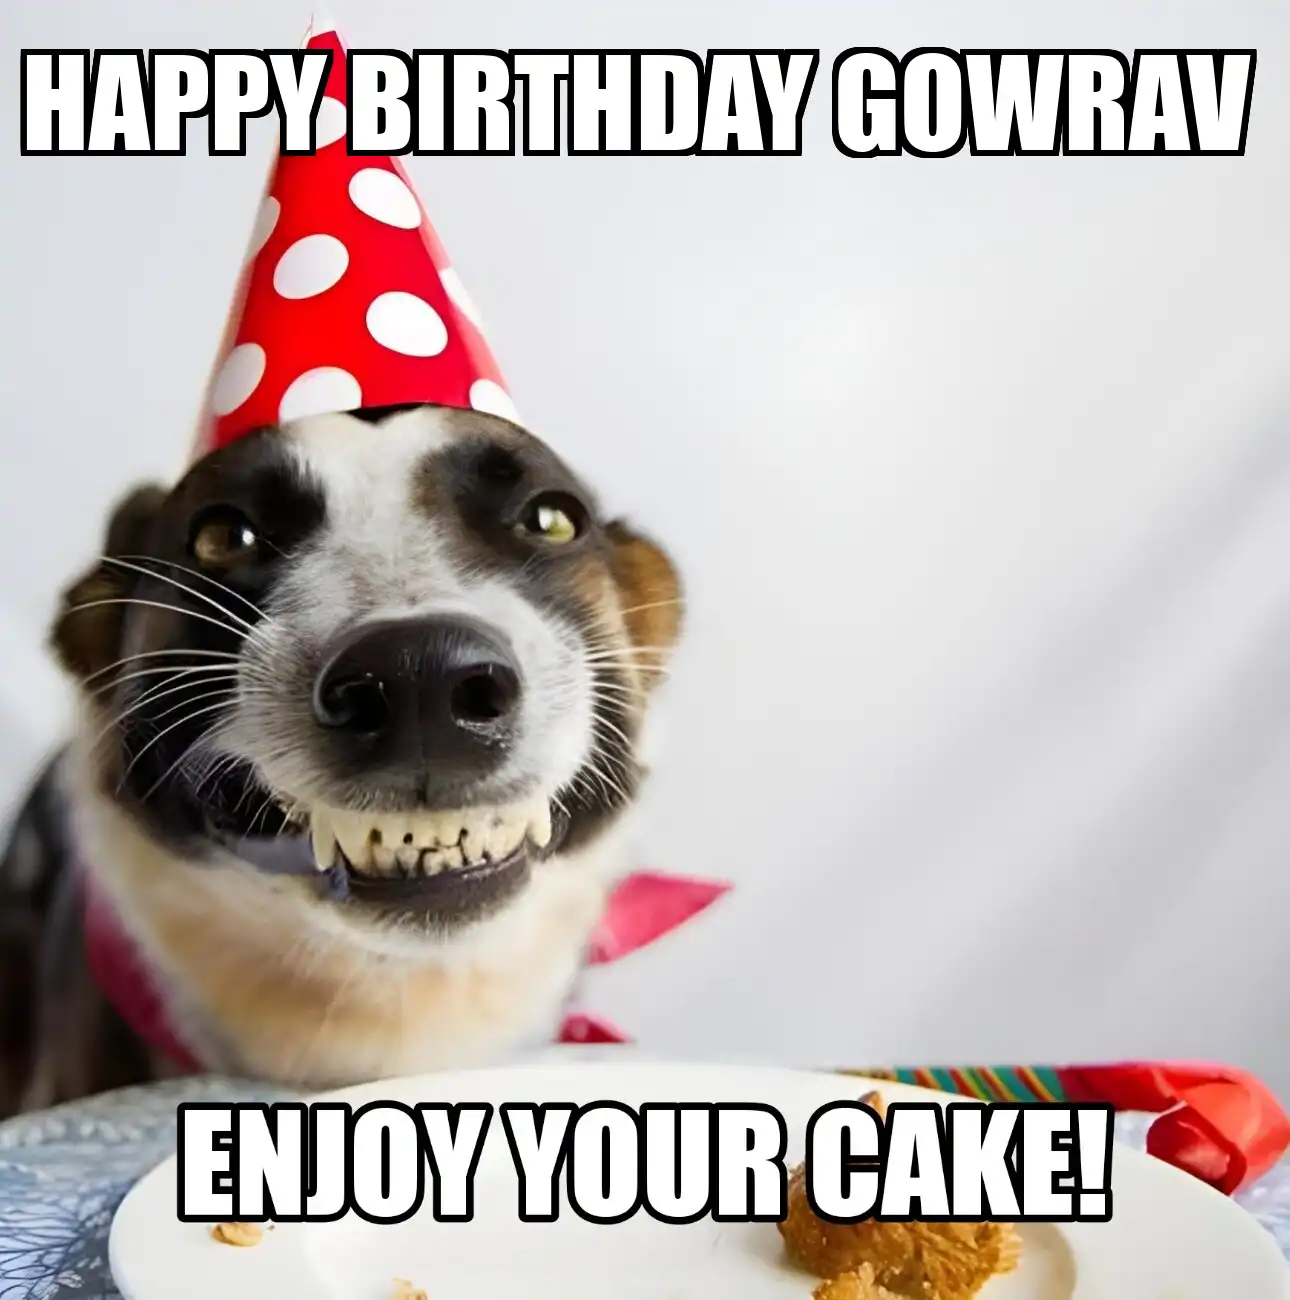 Happy Birthday Gowrav Enjoy Your Cake Dog Meme